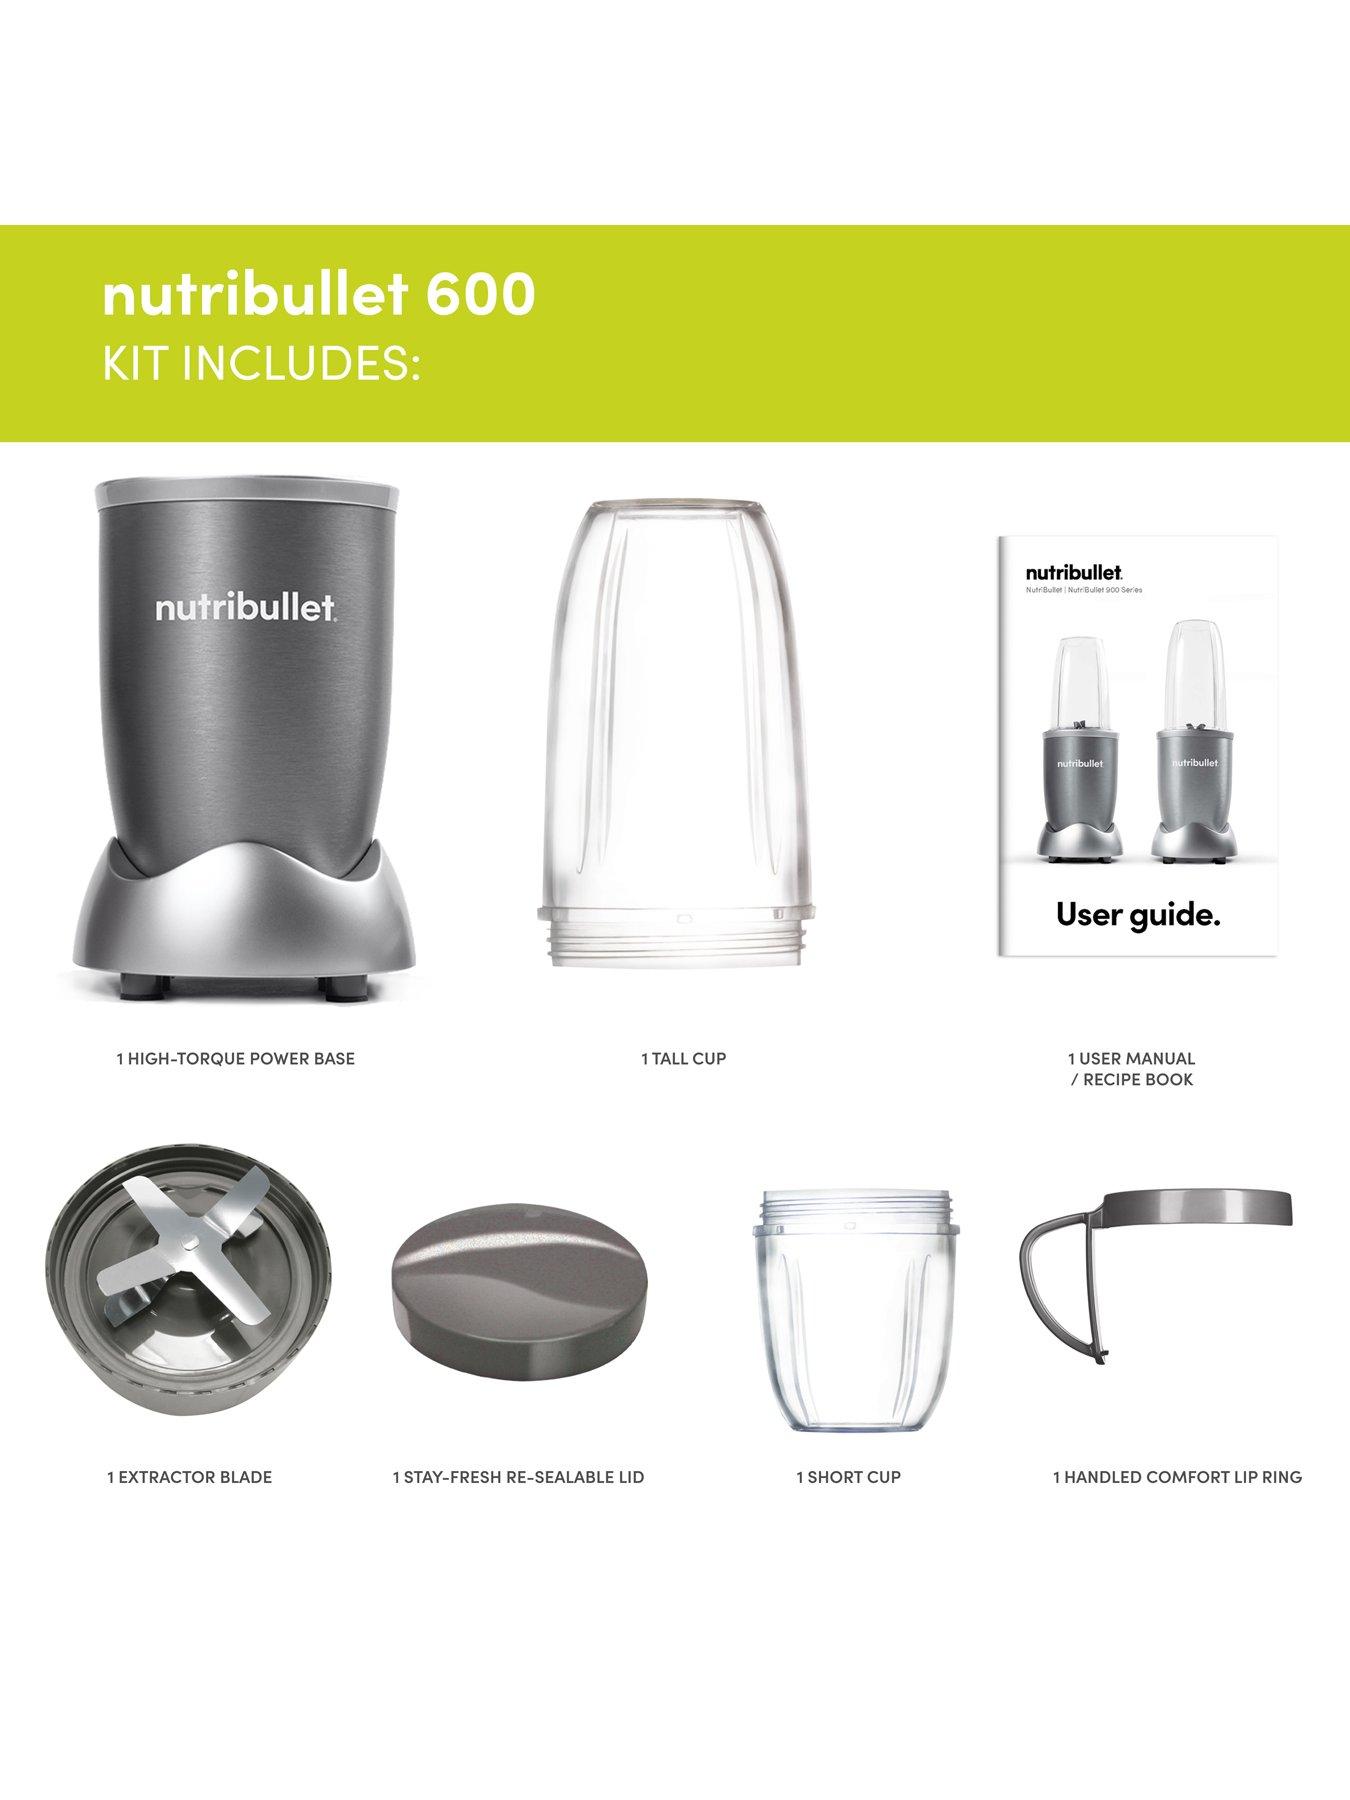 NUTRIBULLET 600 Series - Graphite